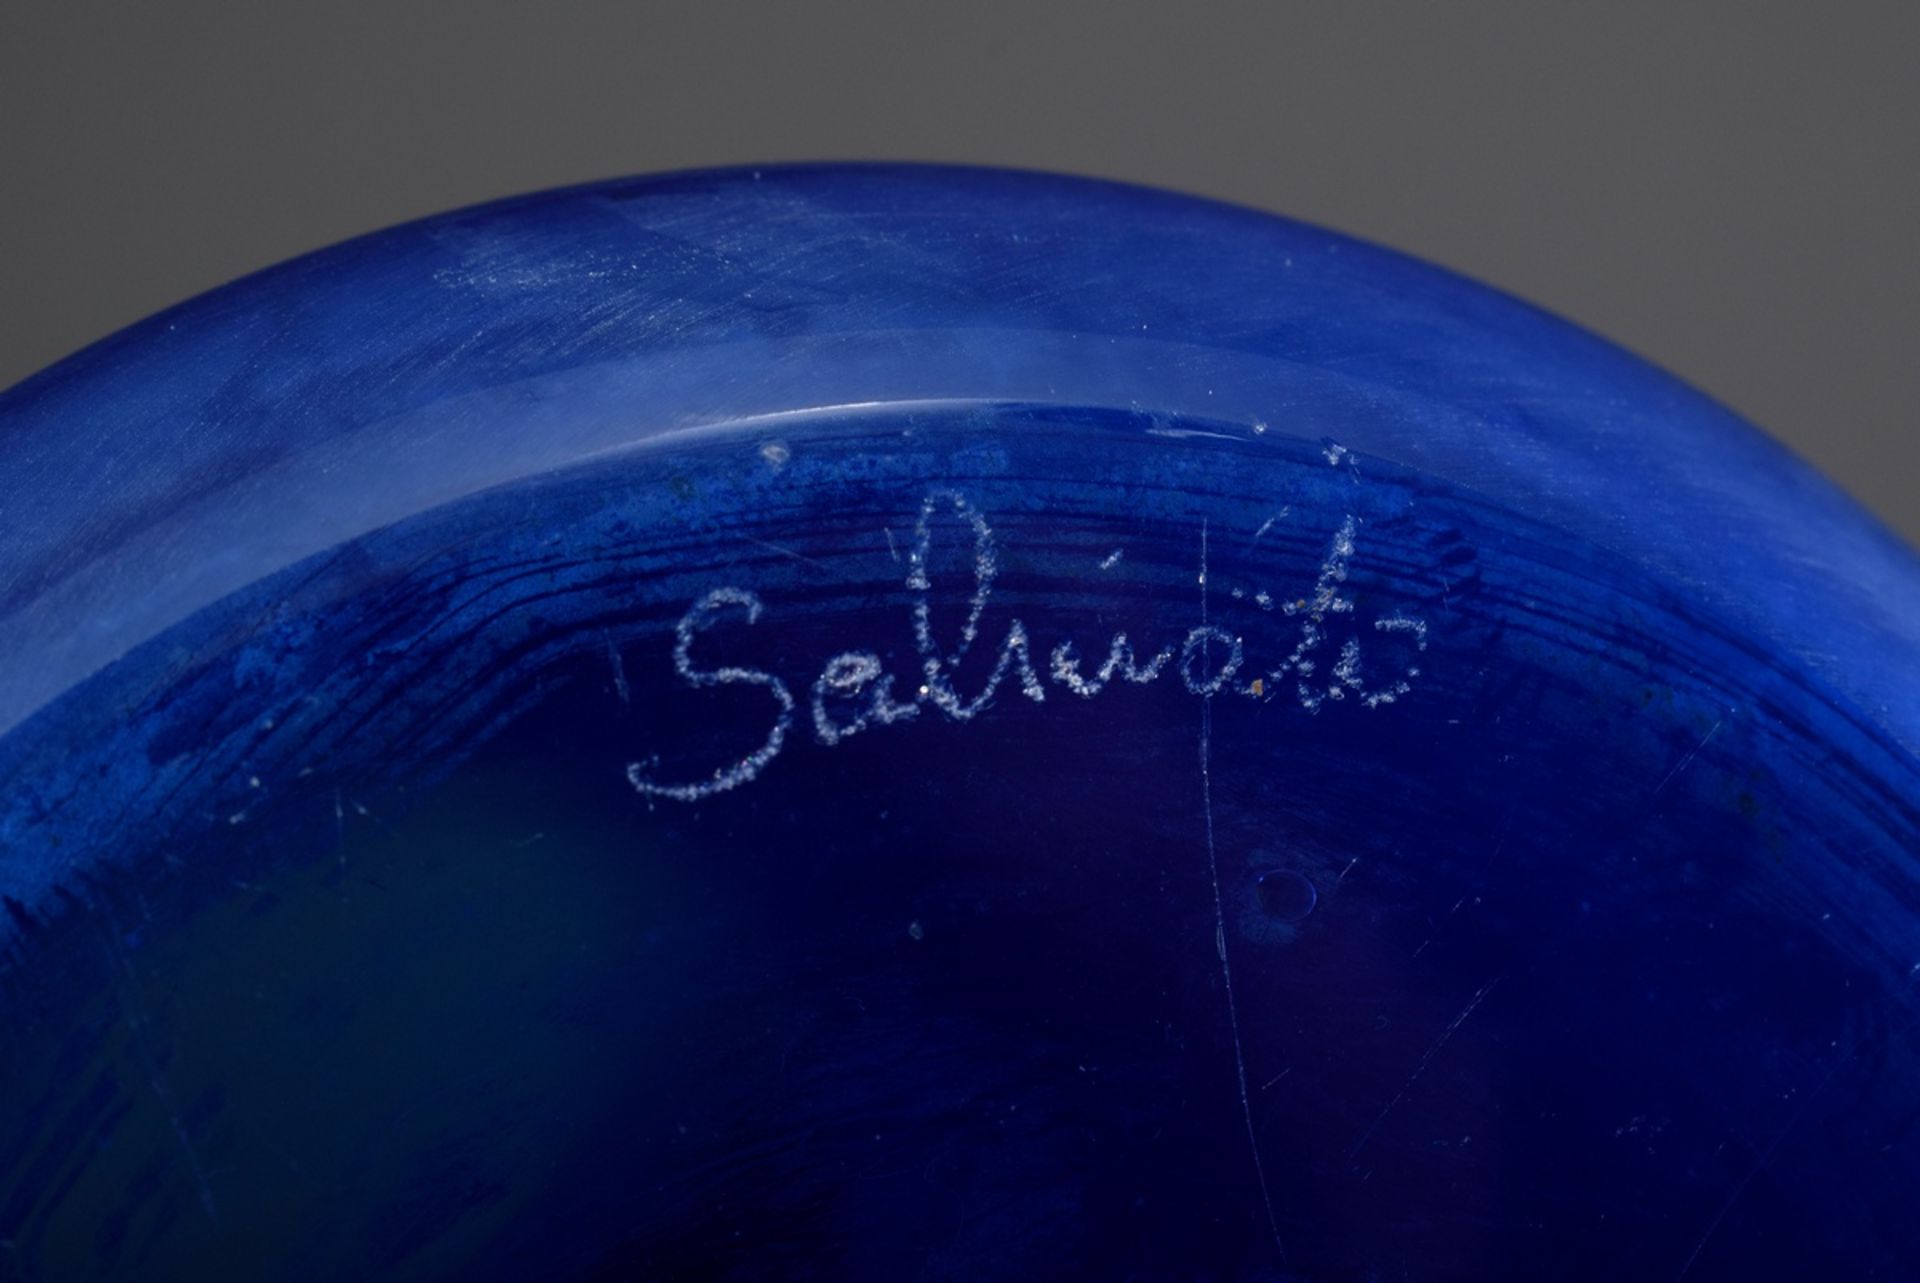 Hohe Salviati Stangenvase aus blauem Glas mit satinierter Oberfläche, am Boden - Bild 4 aus 4